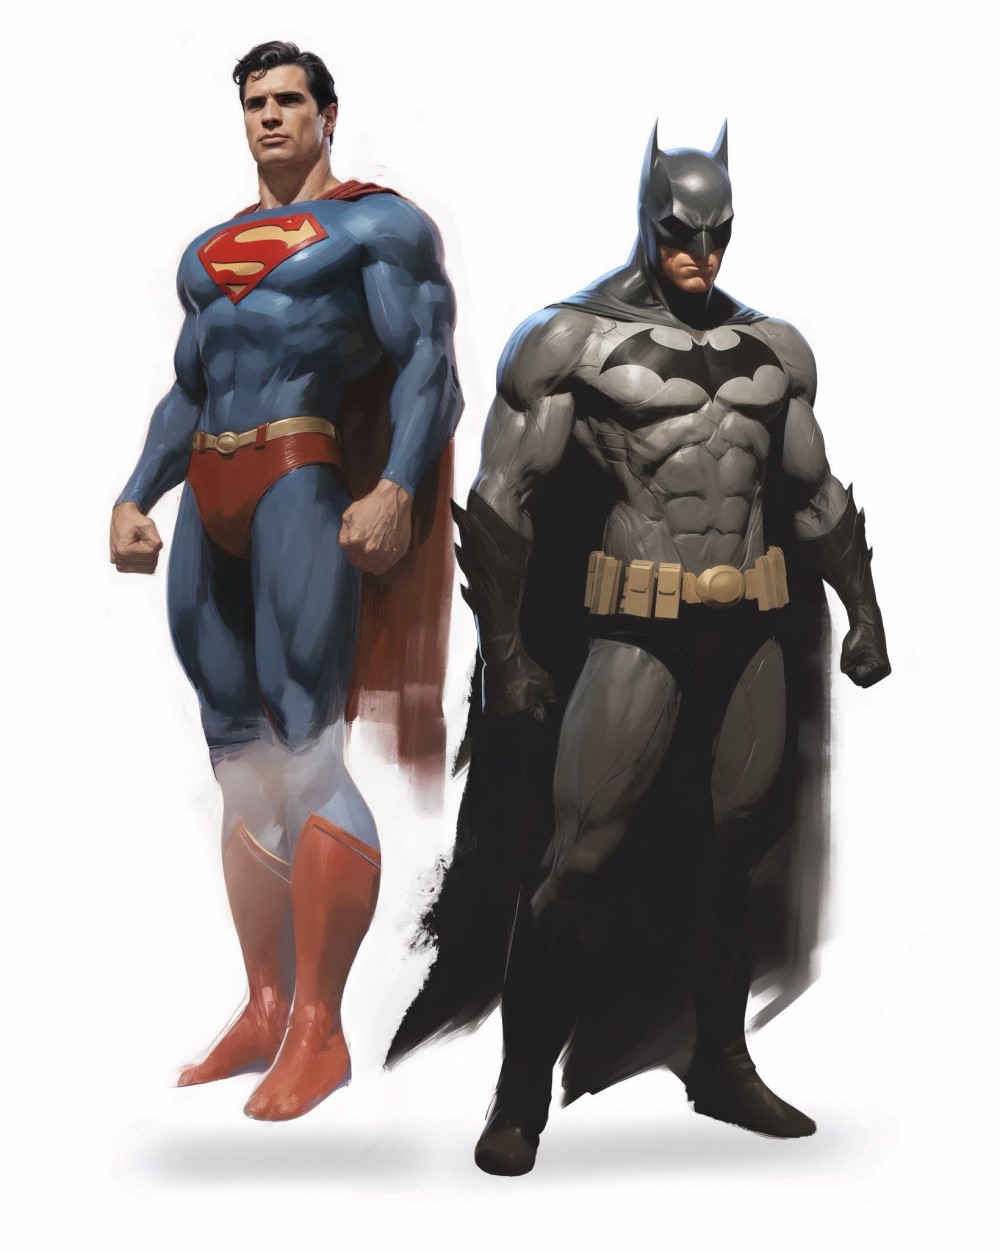 Дэвид Коренсвет в образе Супермена и Дженсен Эклс в образе Бэтмена (фан-каст), фан-арт / Фото: X (бывший Twitter)*/21xfour/ *соцсеть запрещена в России